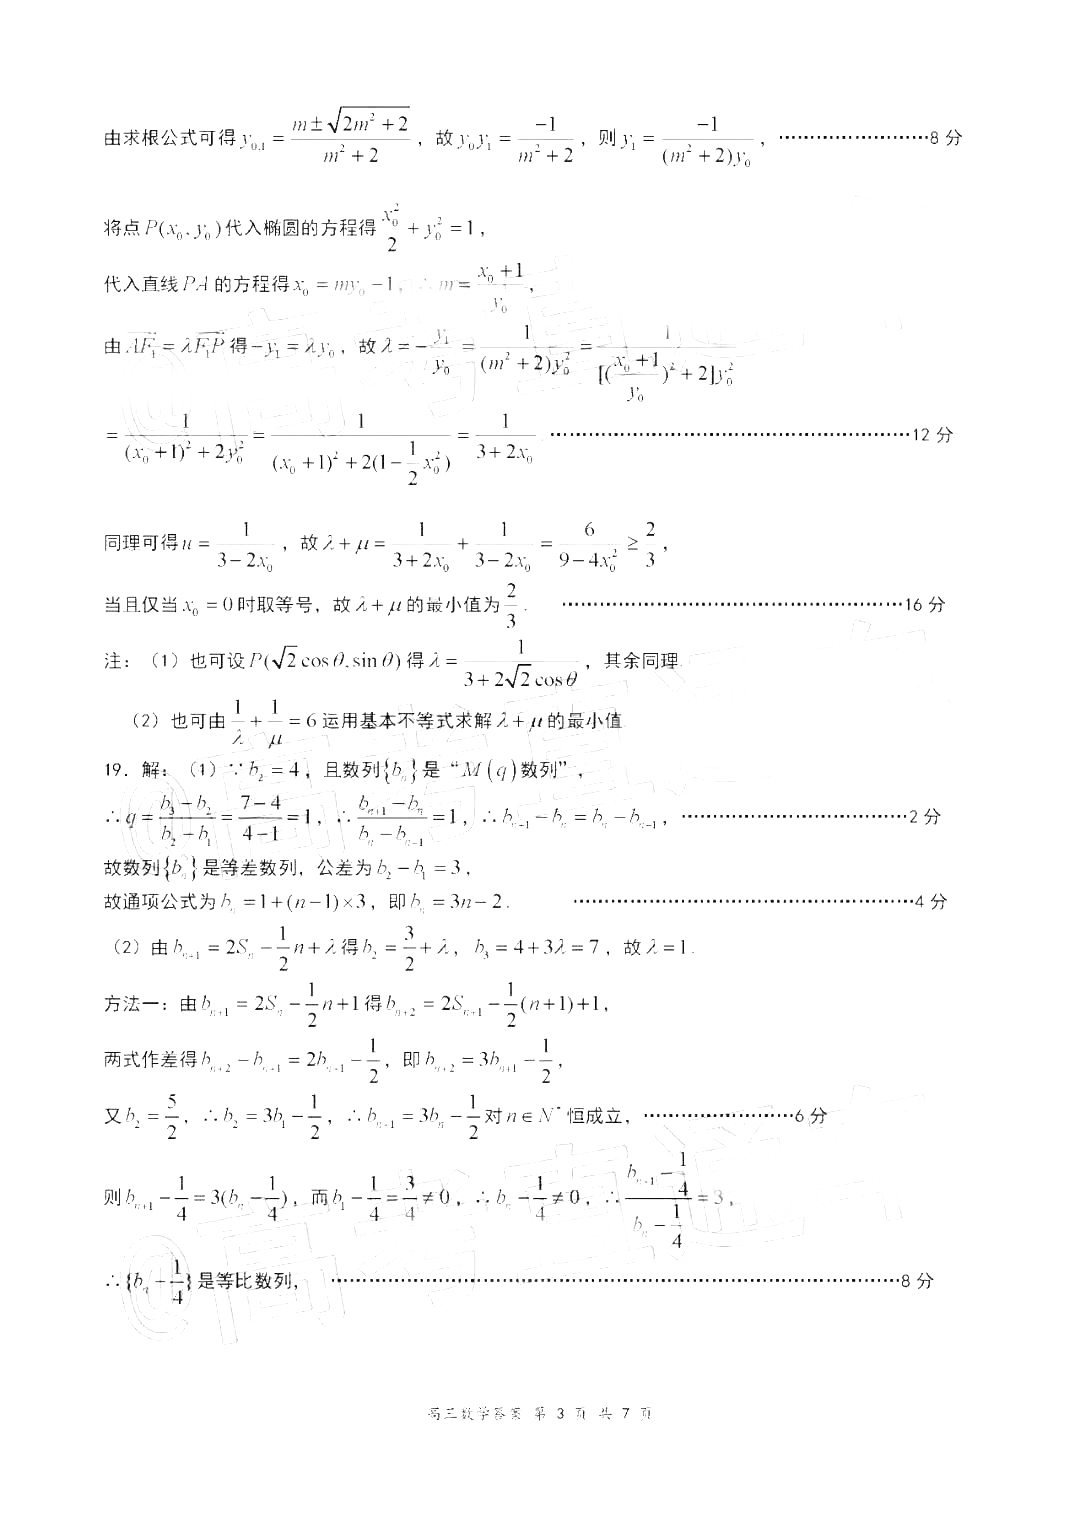 2020年江苏盐城、南京高三一模数学试卷参考答案官方发布!